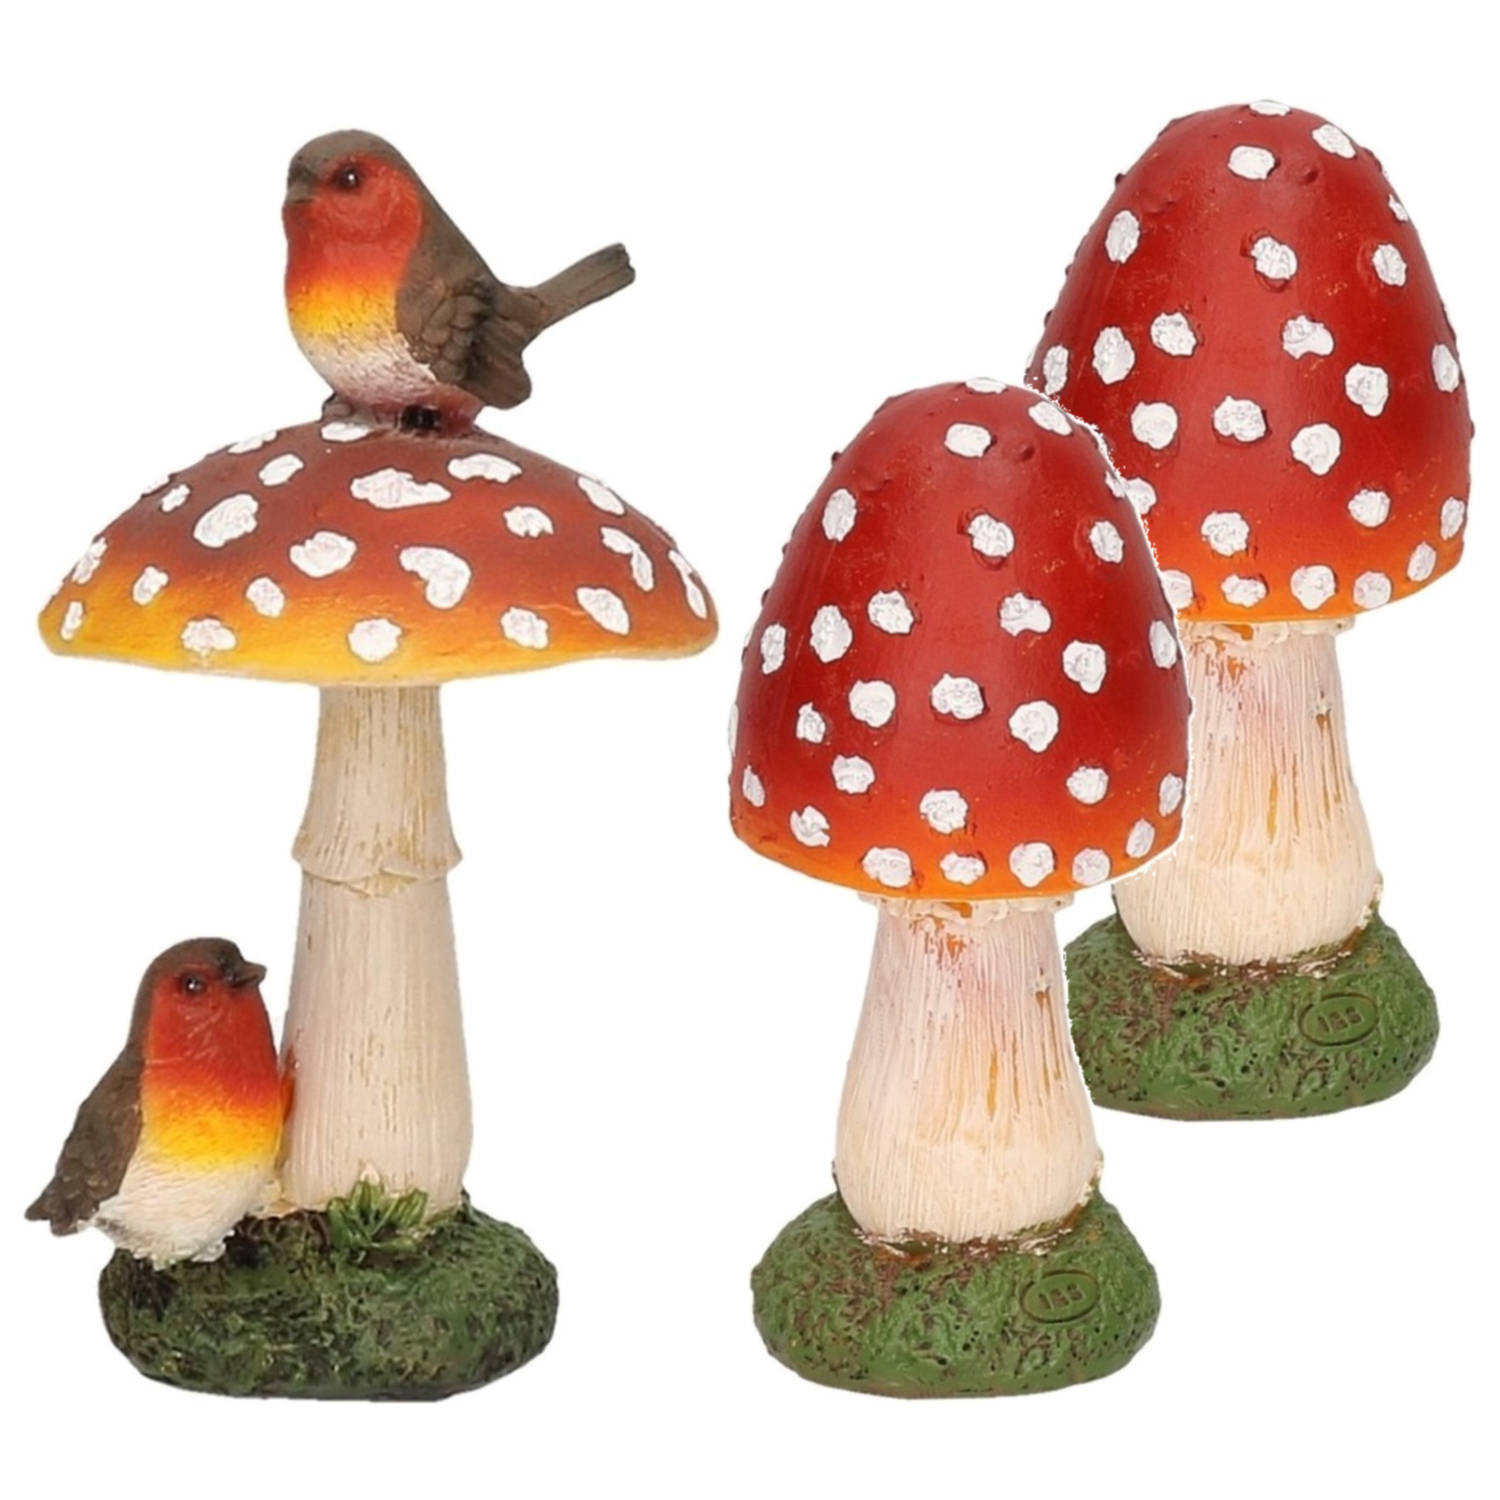 Decoratie paddenstoelen setje met 2x gewone paddenstoel en 1x met vogeltjes - Tuinbeelden